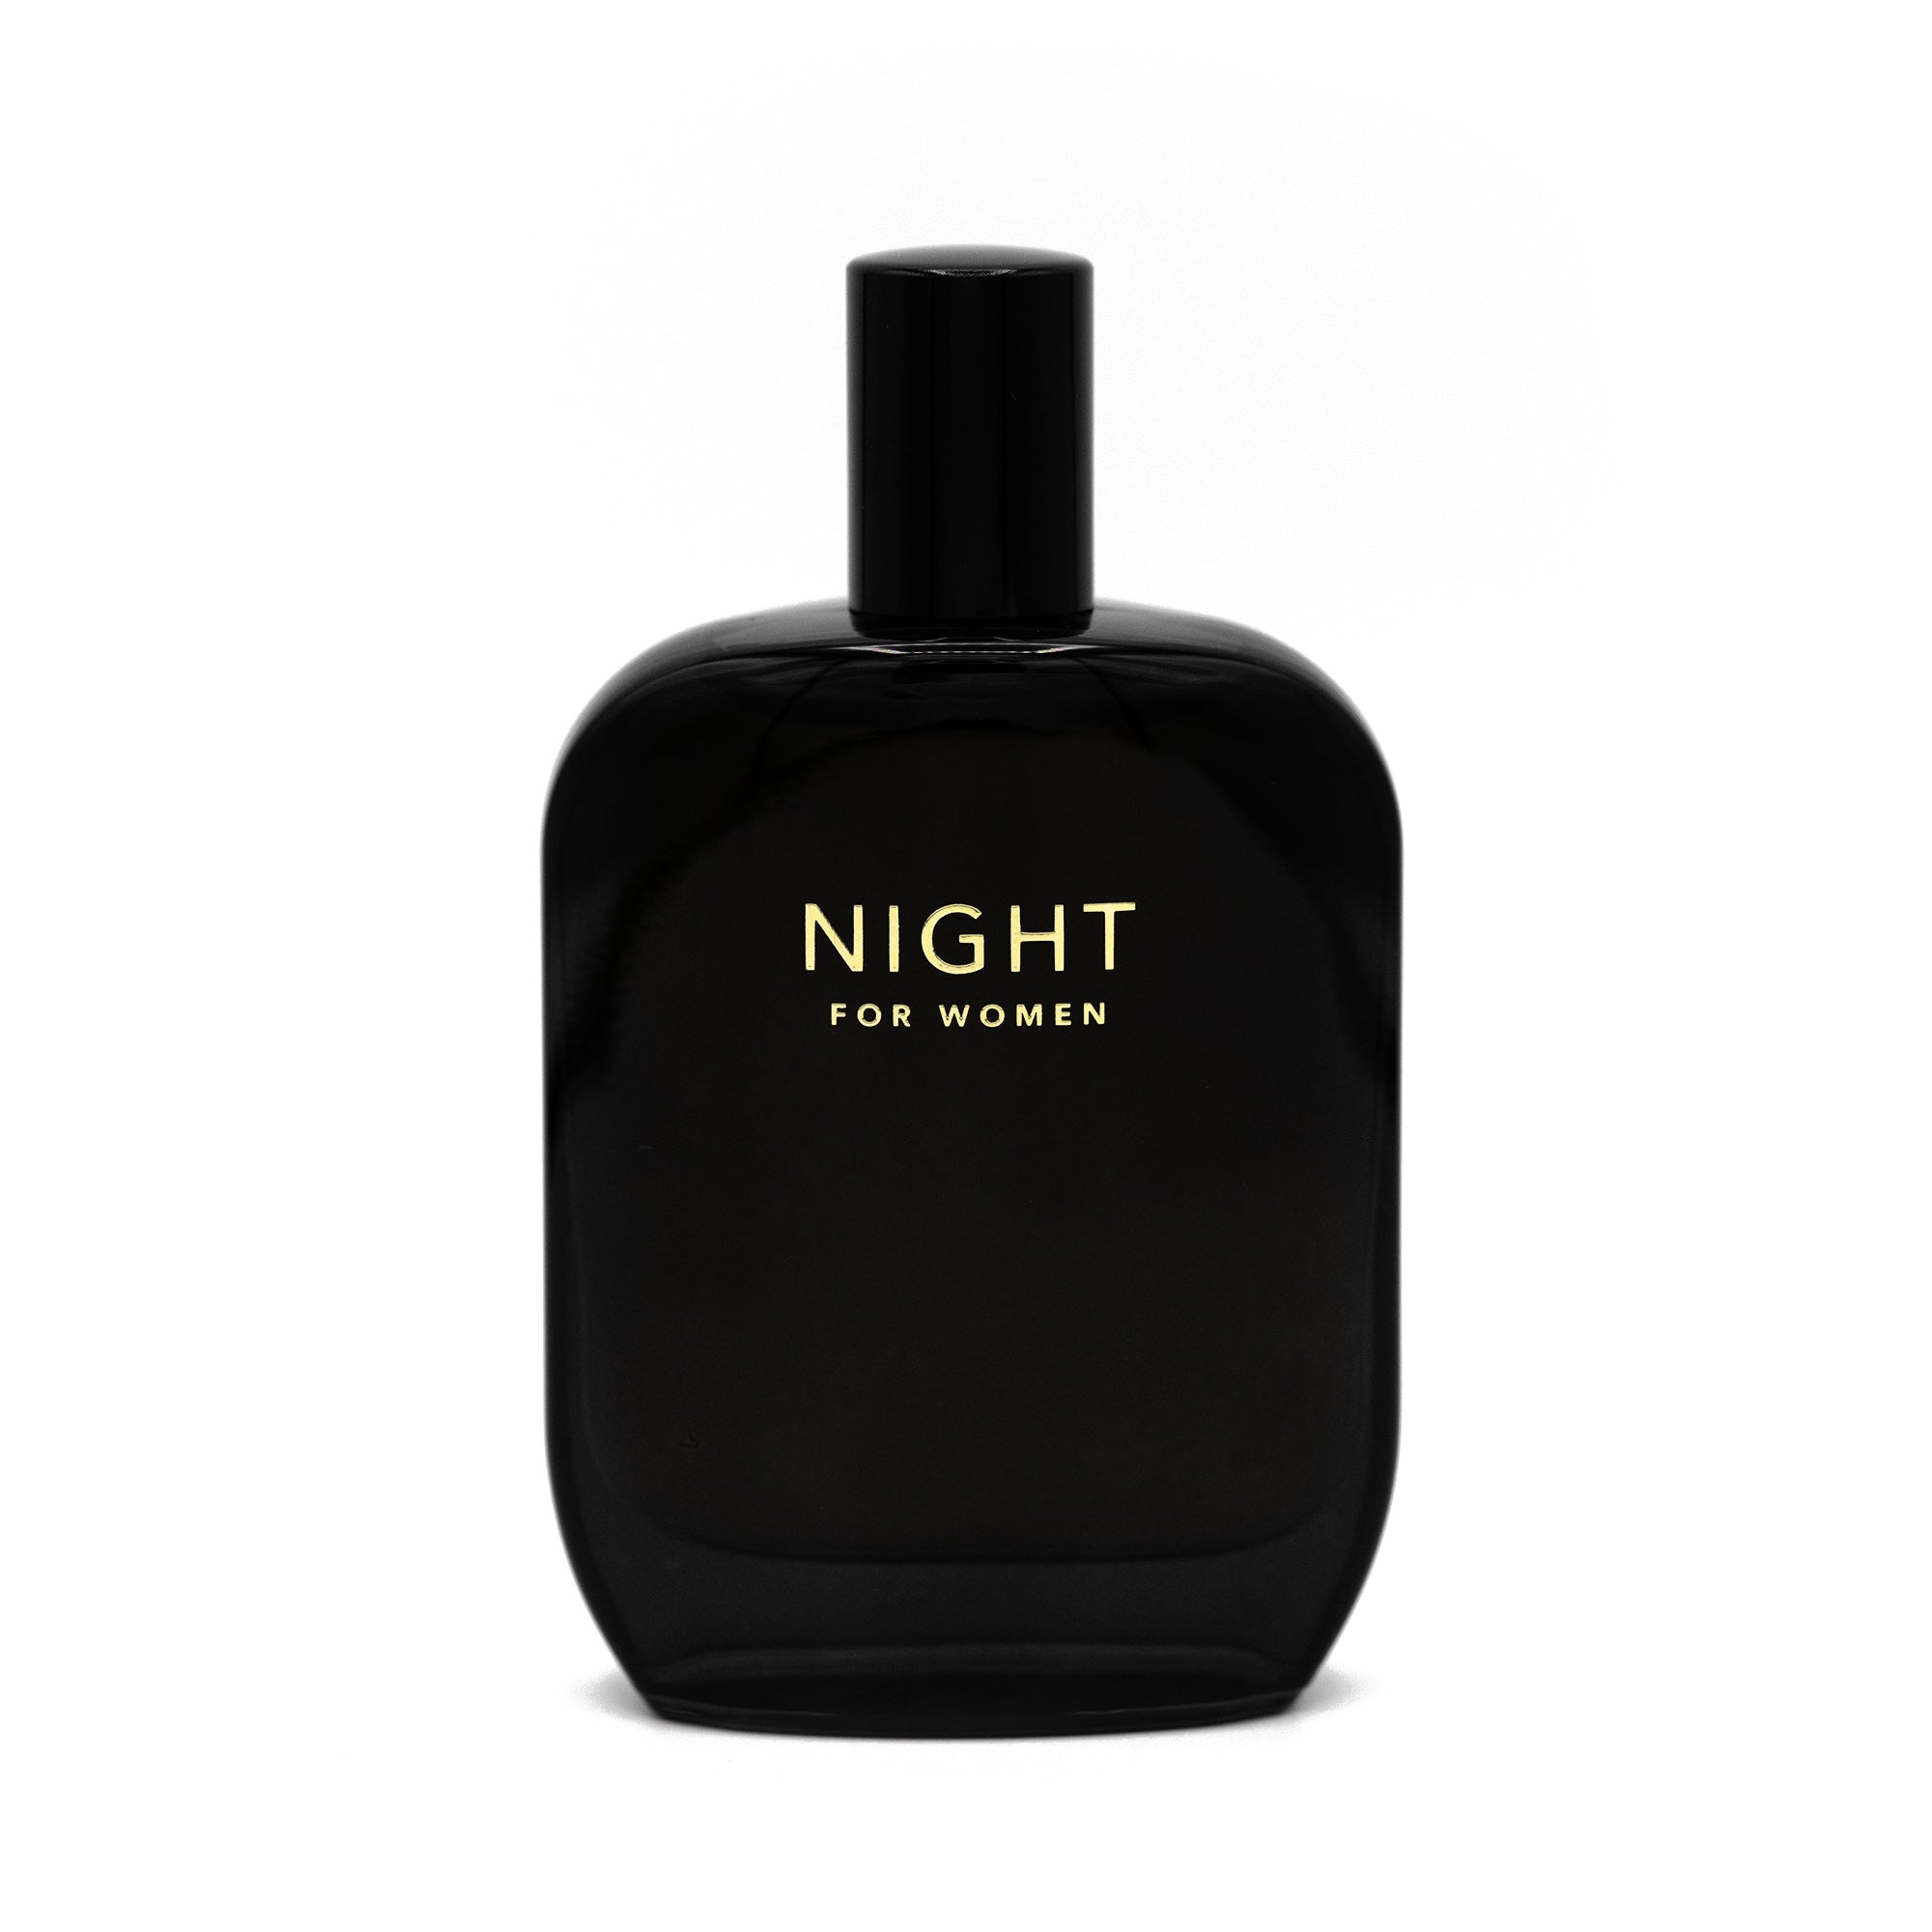 NIGHT for Women fragrance bottle 50ml closed cap